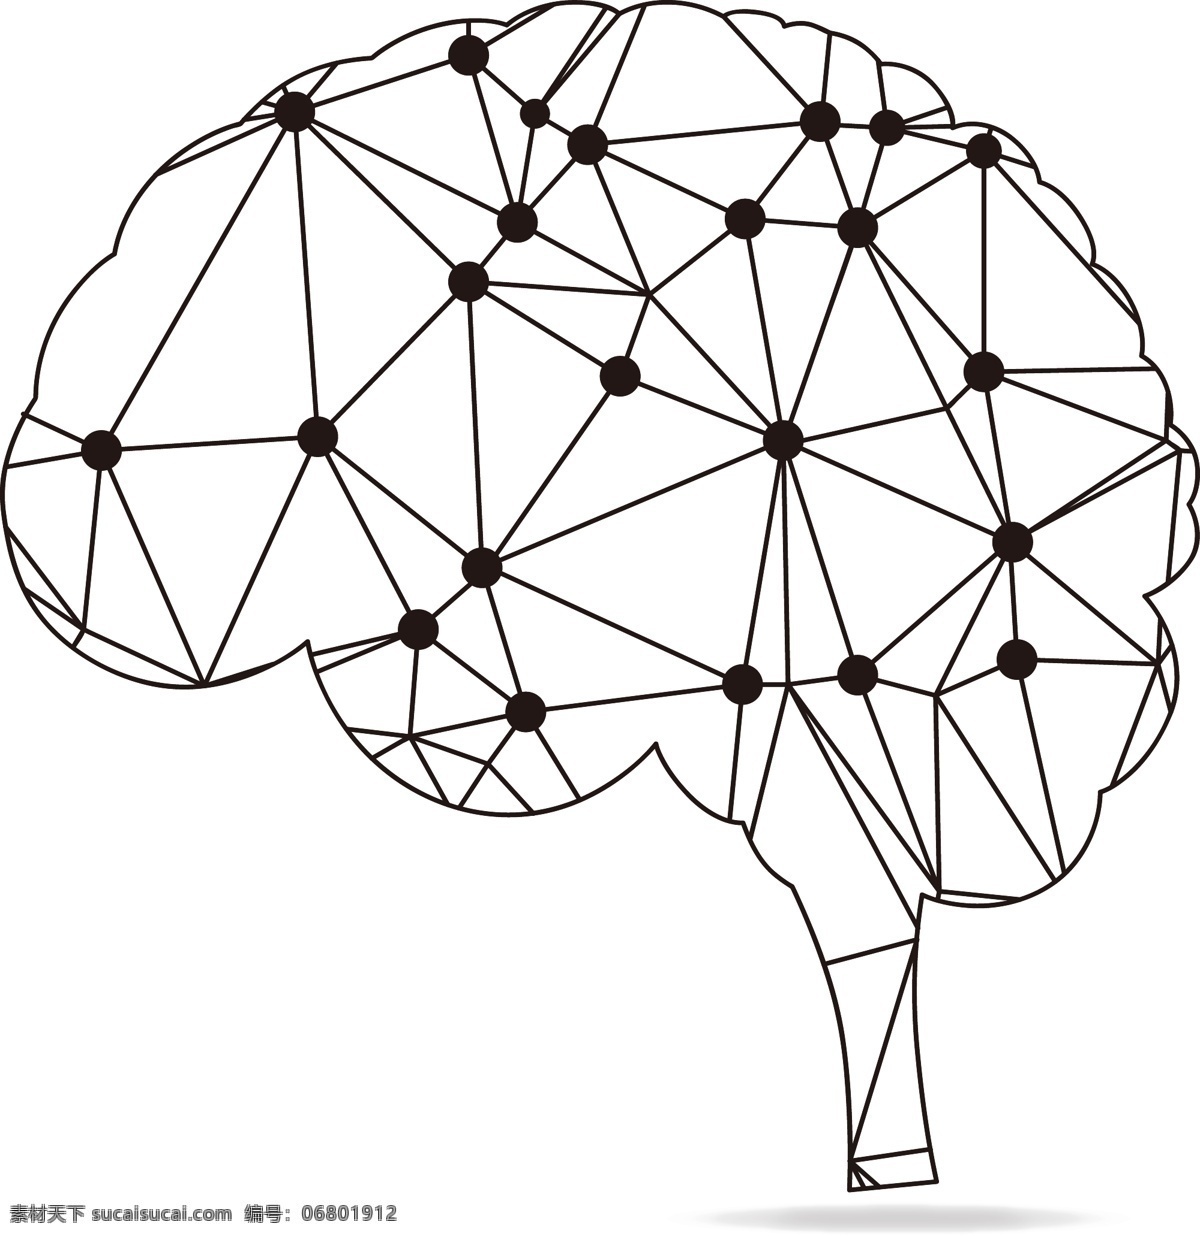 大脑线条图 大脑 脑袋 脑子 思维 创造 创意 创意素材 创新思维 思考 科技大脑 科技思维